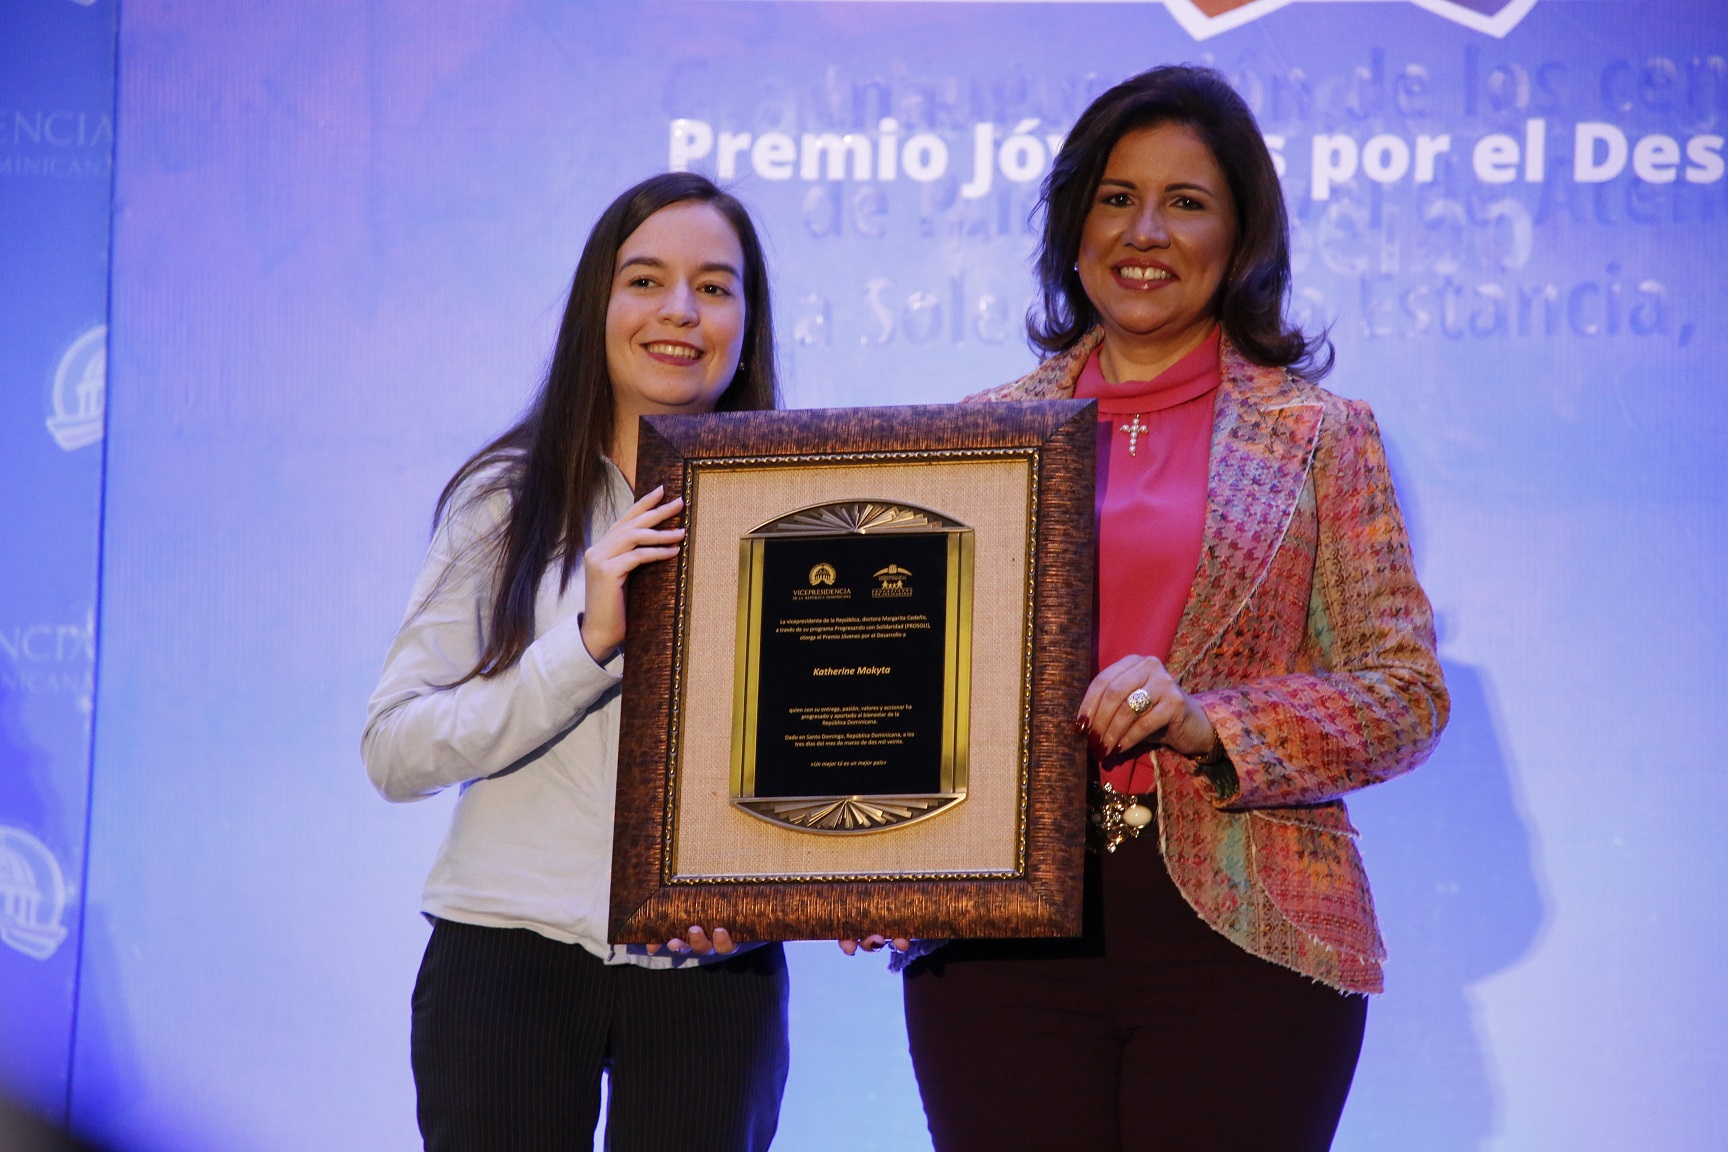 Margarita Cedeño manifiesta orgullo de la juventud por su exigencia de democracia